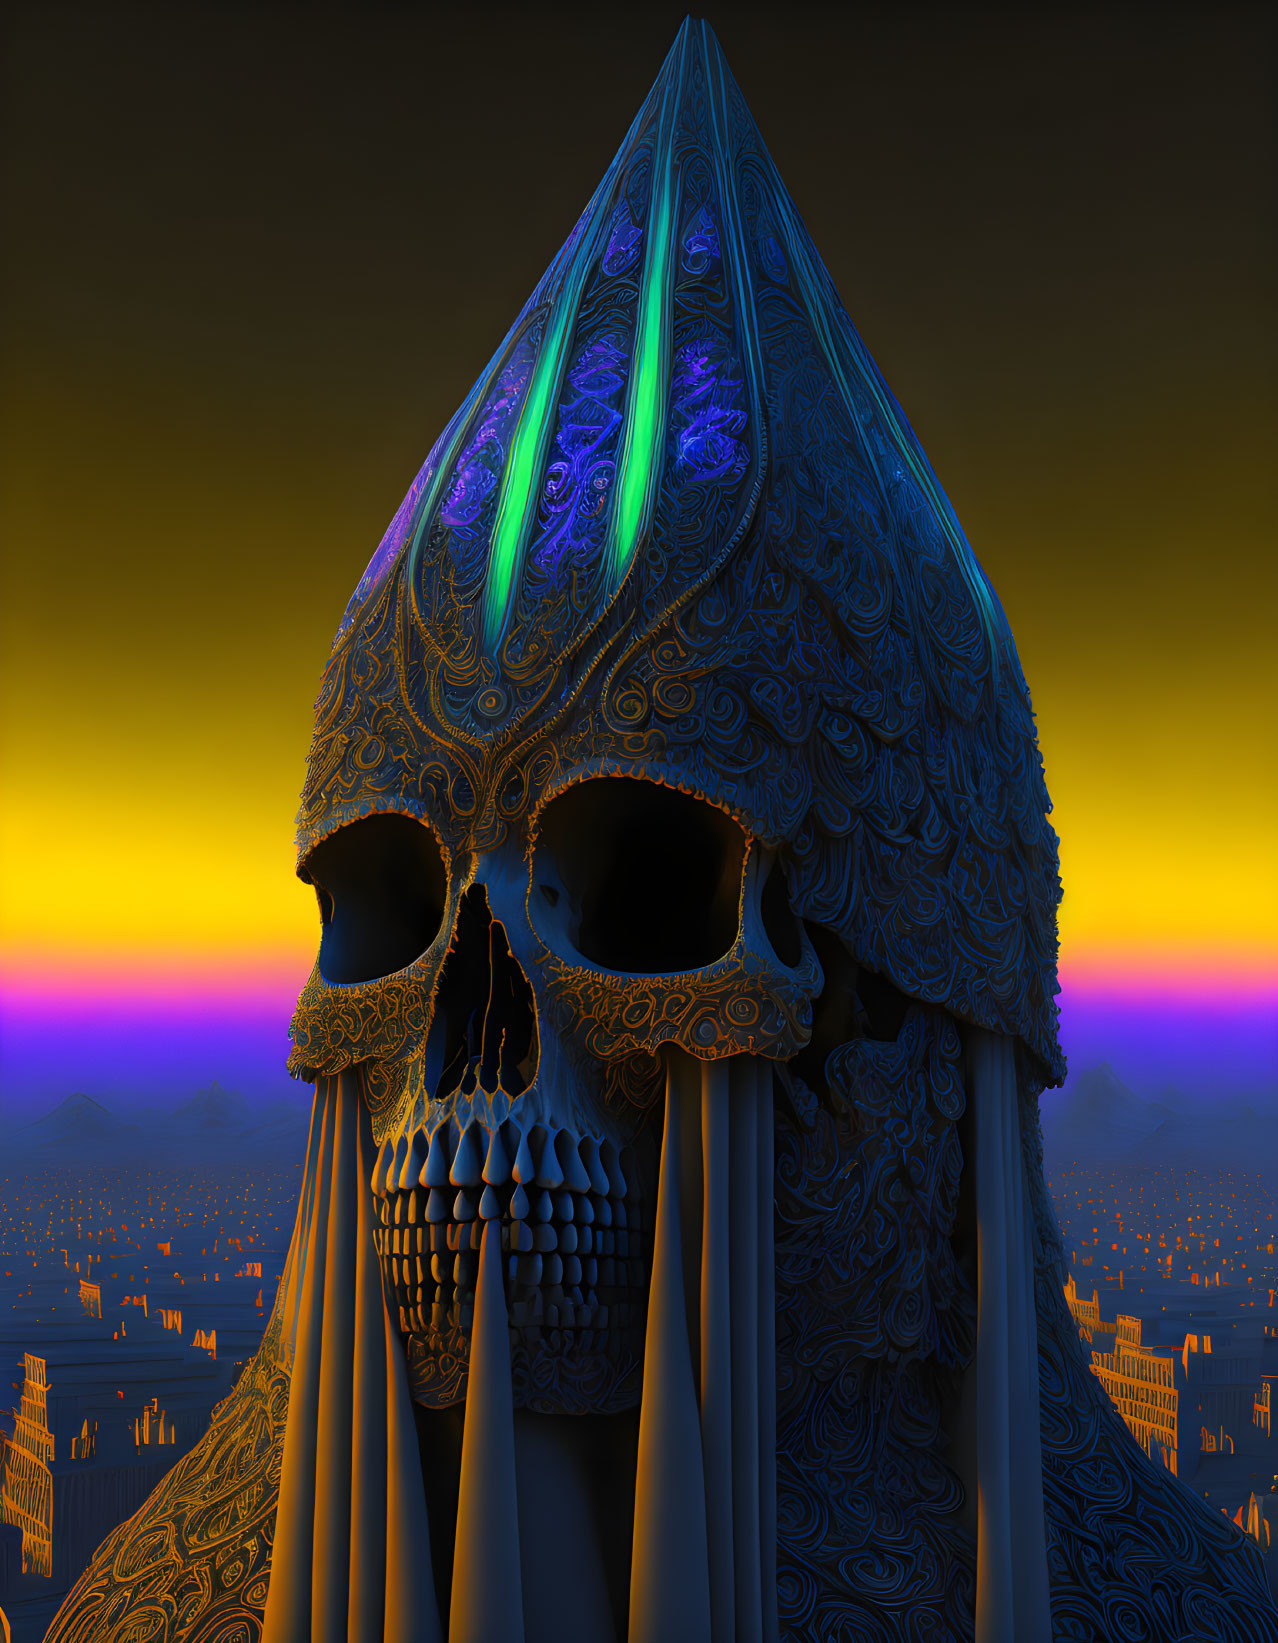 Fractal skull tower